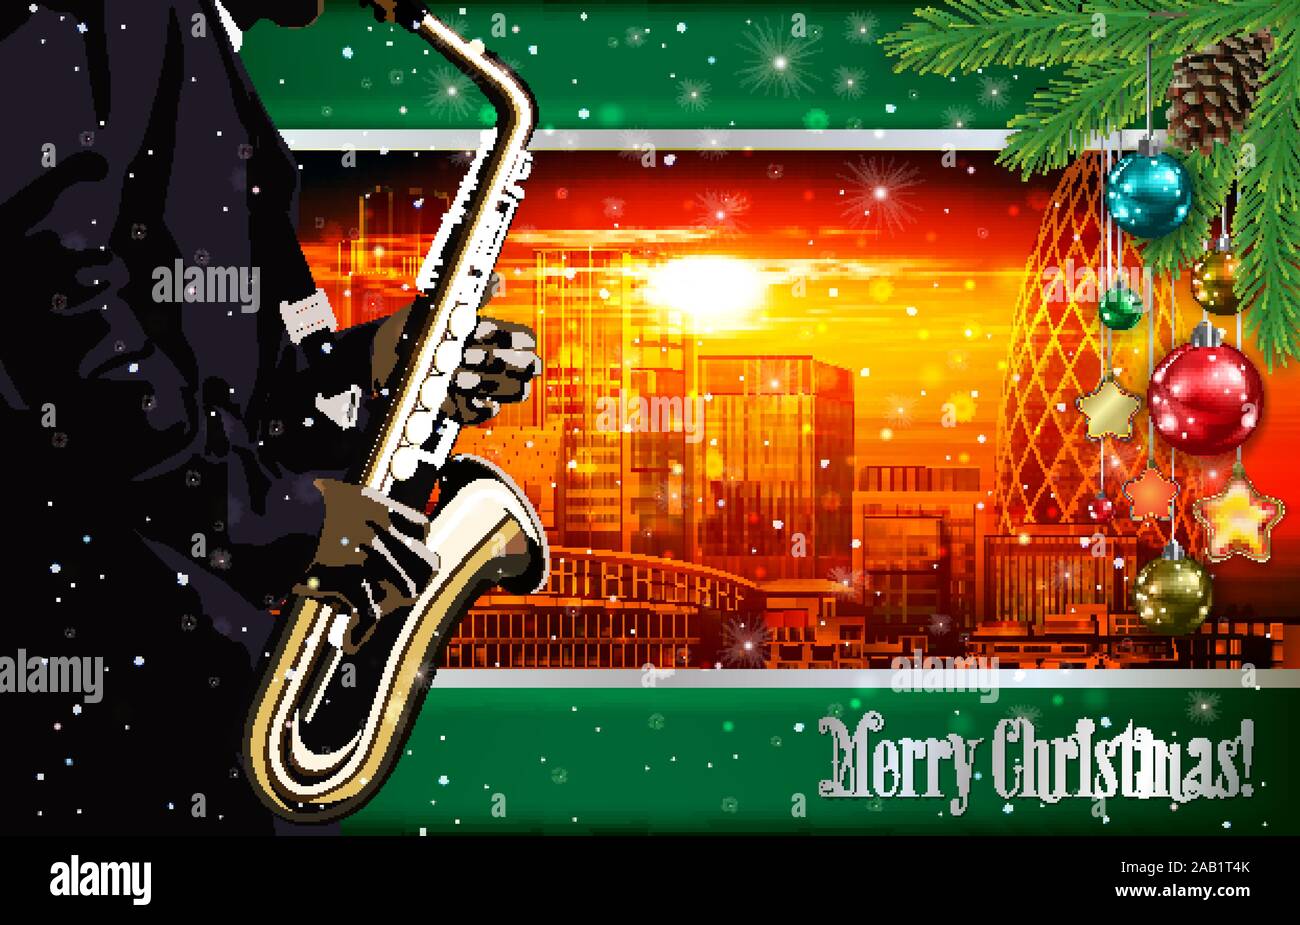 Weihnachten rot grün Illustration mit Saxophon Spieler auf stadtbild von London Hintergrund Stock Vektor